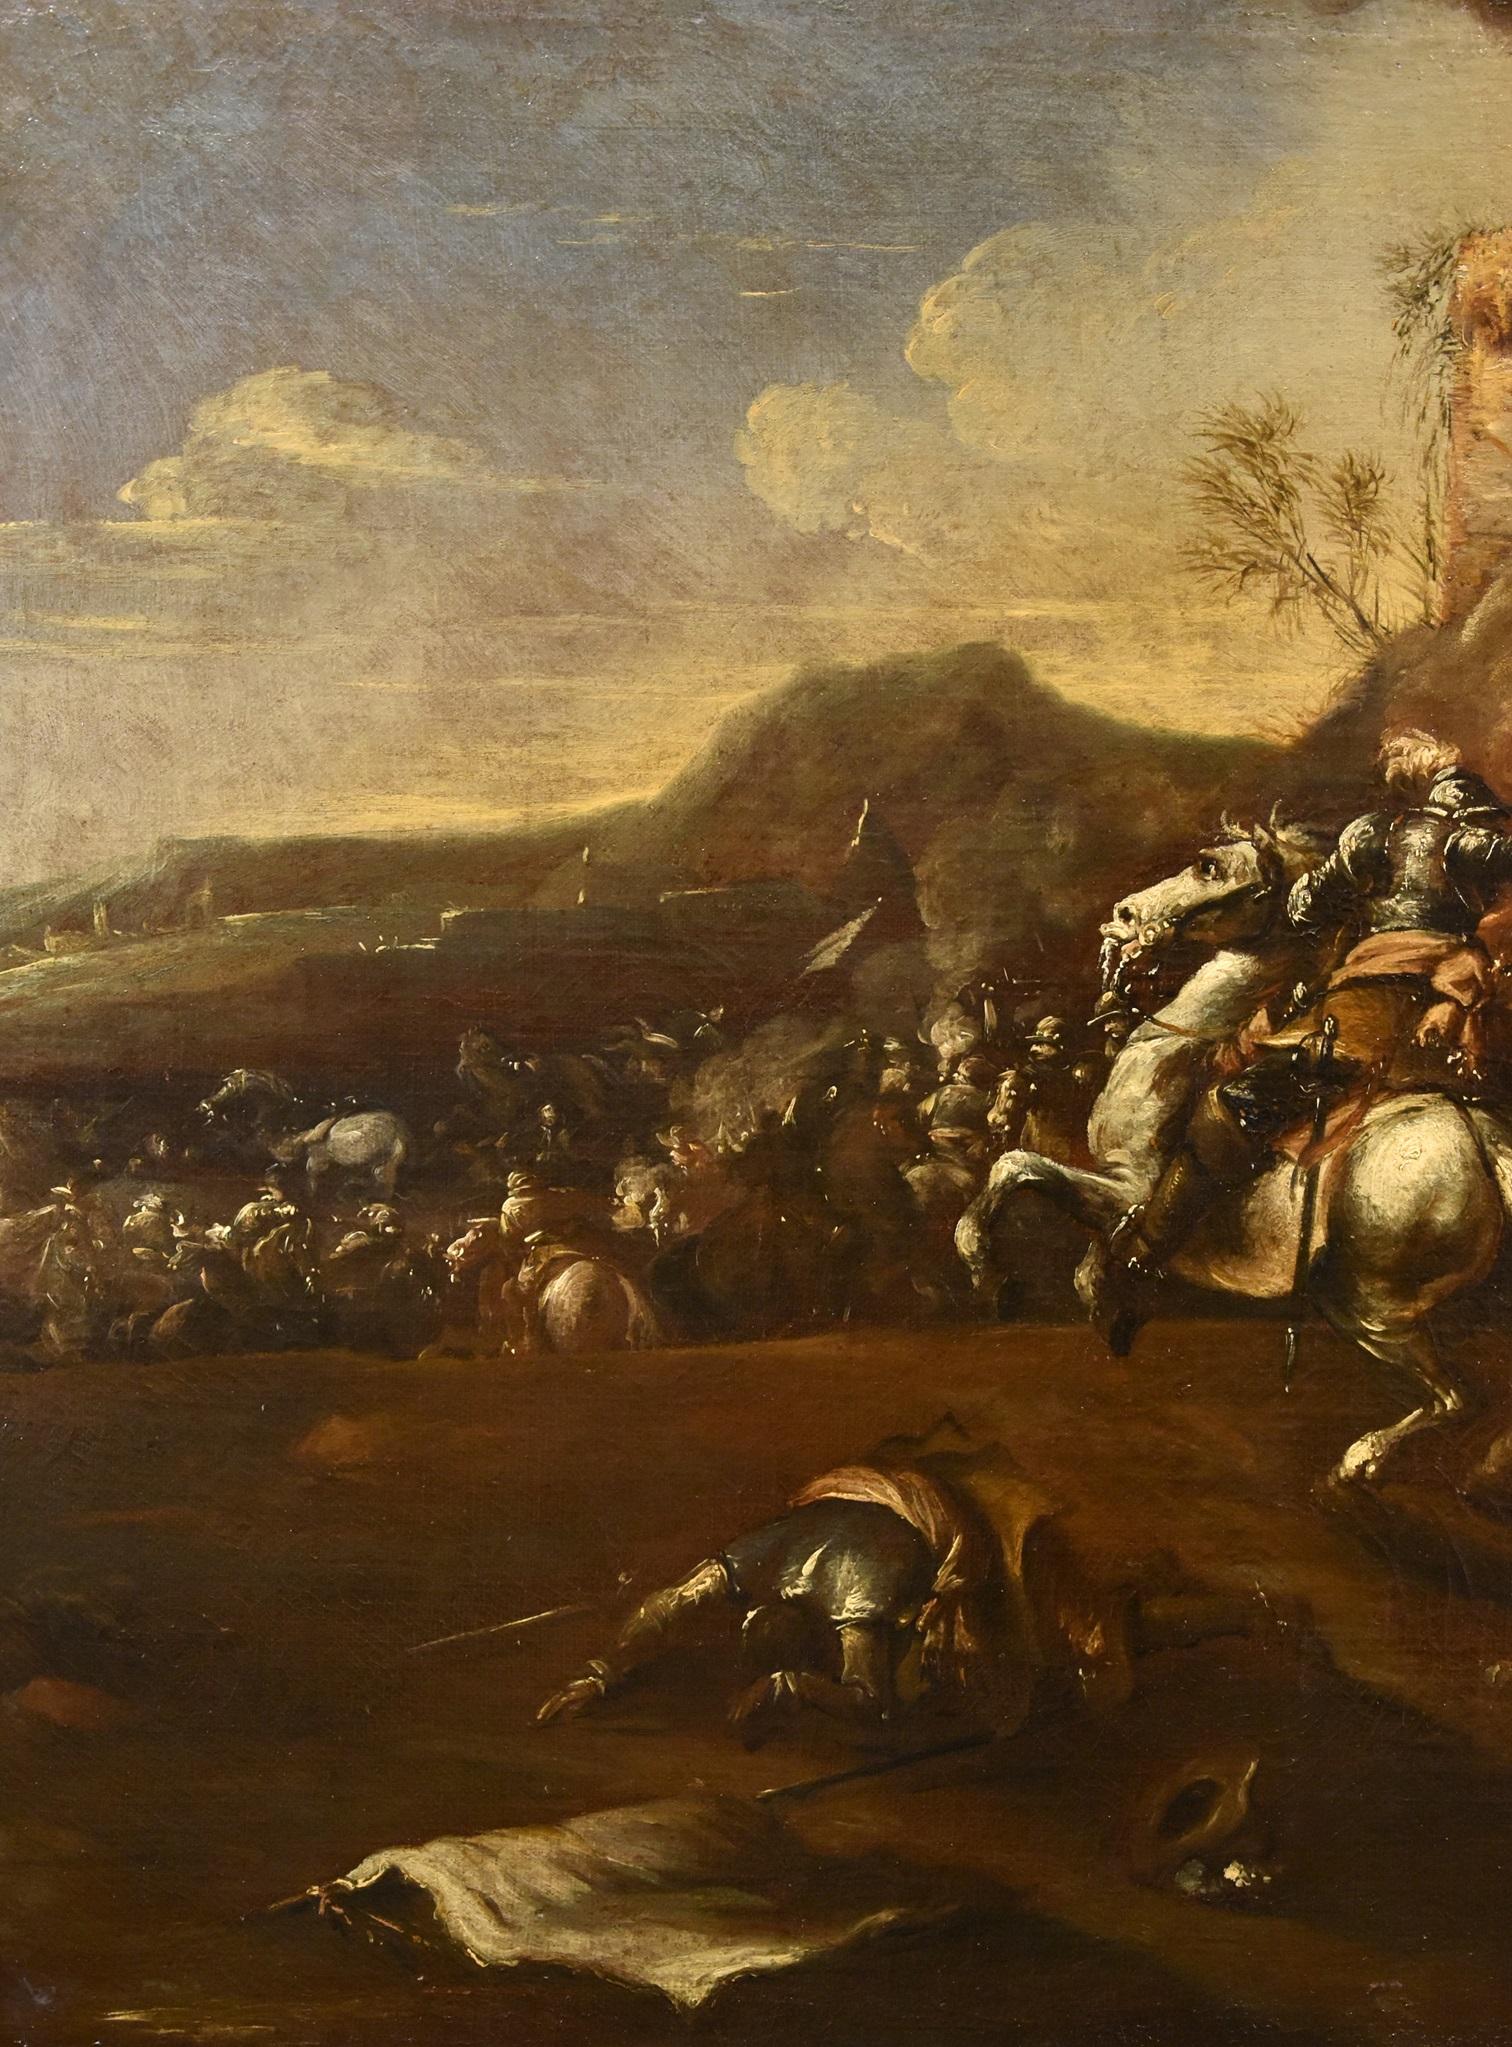 Francesco Graziani, dit Ciccio Napoletano
(actif à Naples et à Rome dans la seconde moitié du XVIIe siècle)

Bataille avec affrontement de cavaliers

Huile sur toile
95 x 130 cm
Dans un cadre d'époque cm. 114 x 148

Expertise E. Negro

Cette